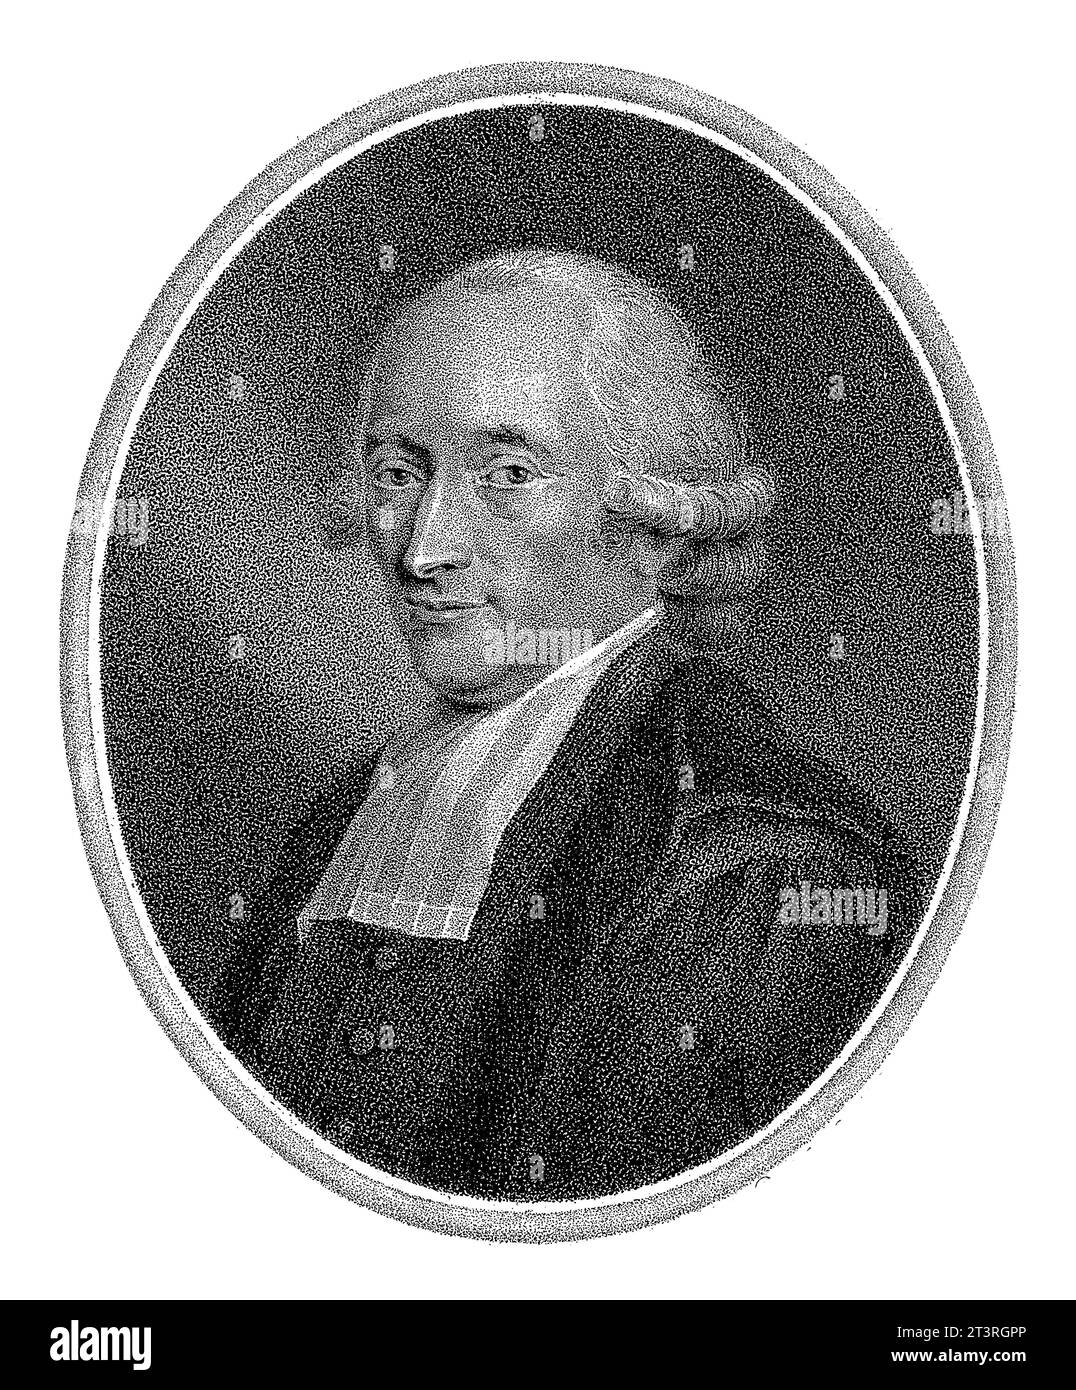 Portrait of Hendrik Constantijn Cras, Lambertus Antonius Claessens, after Adriaan de Lelie, c. 1792 - c. 1808 Stock Photo